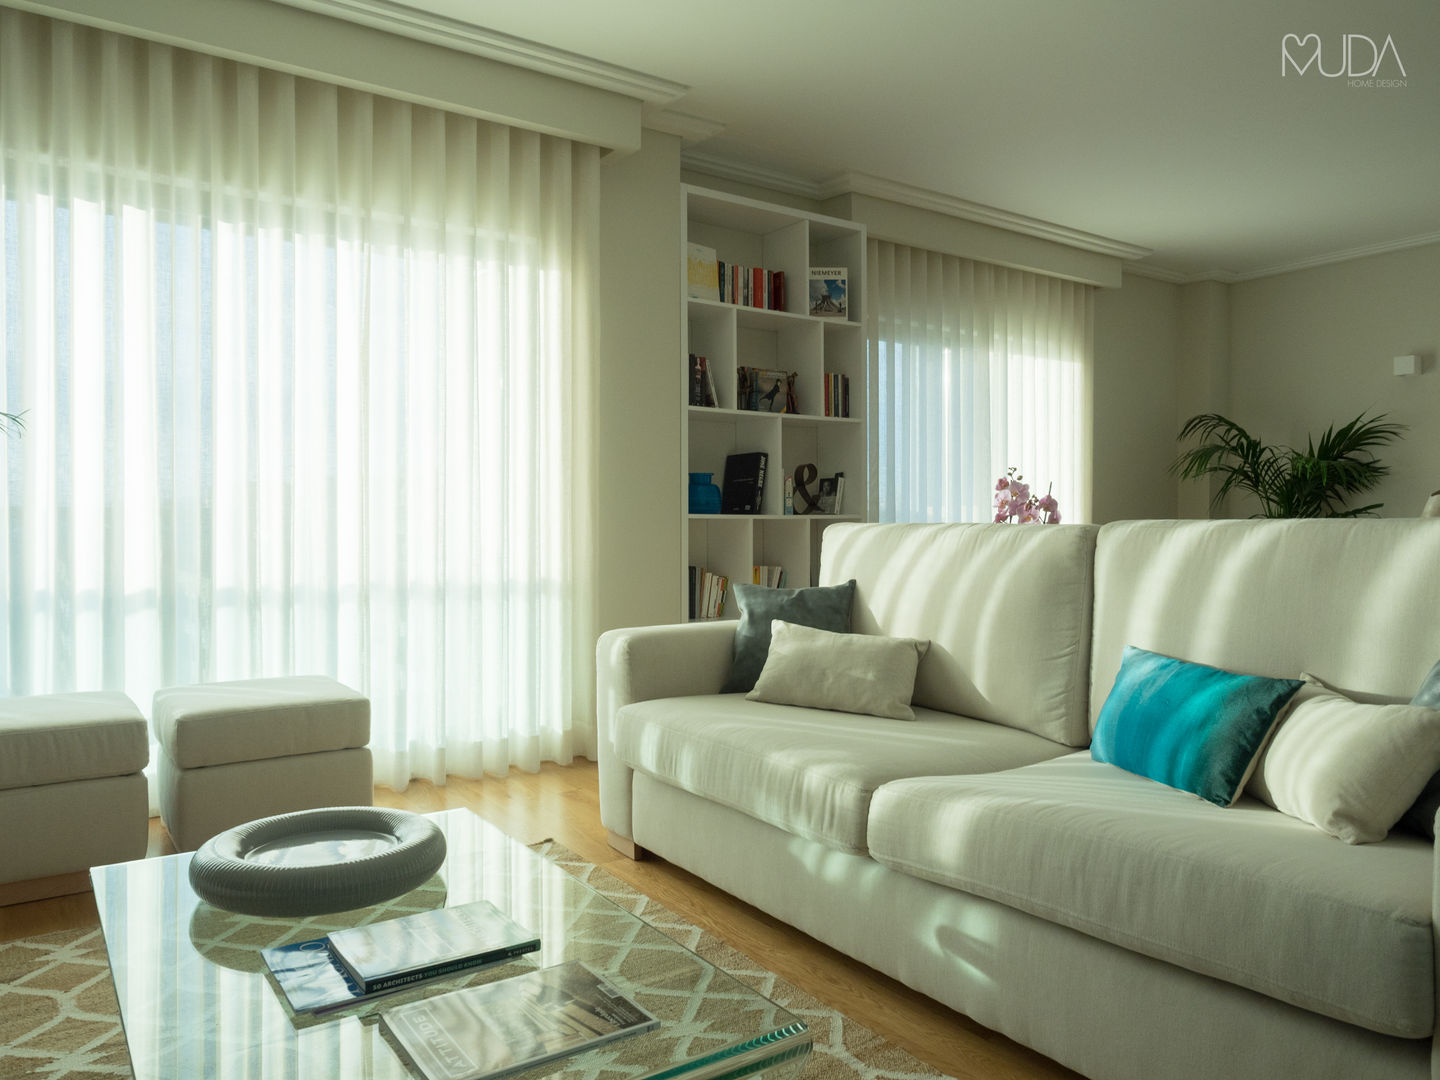 CB Apartment - Lisbon, MUDA Home Design MUDA Home Design Salon moderne